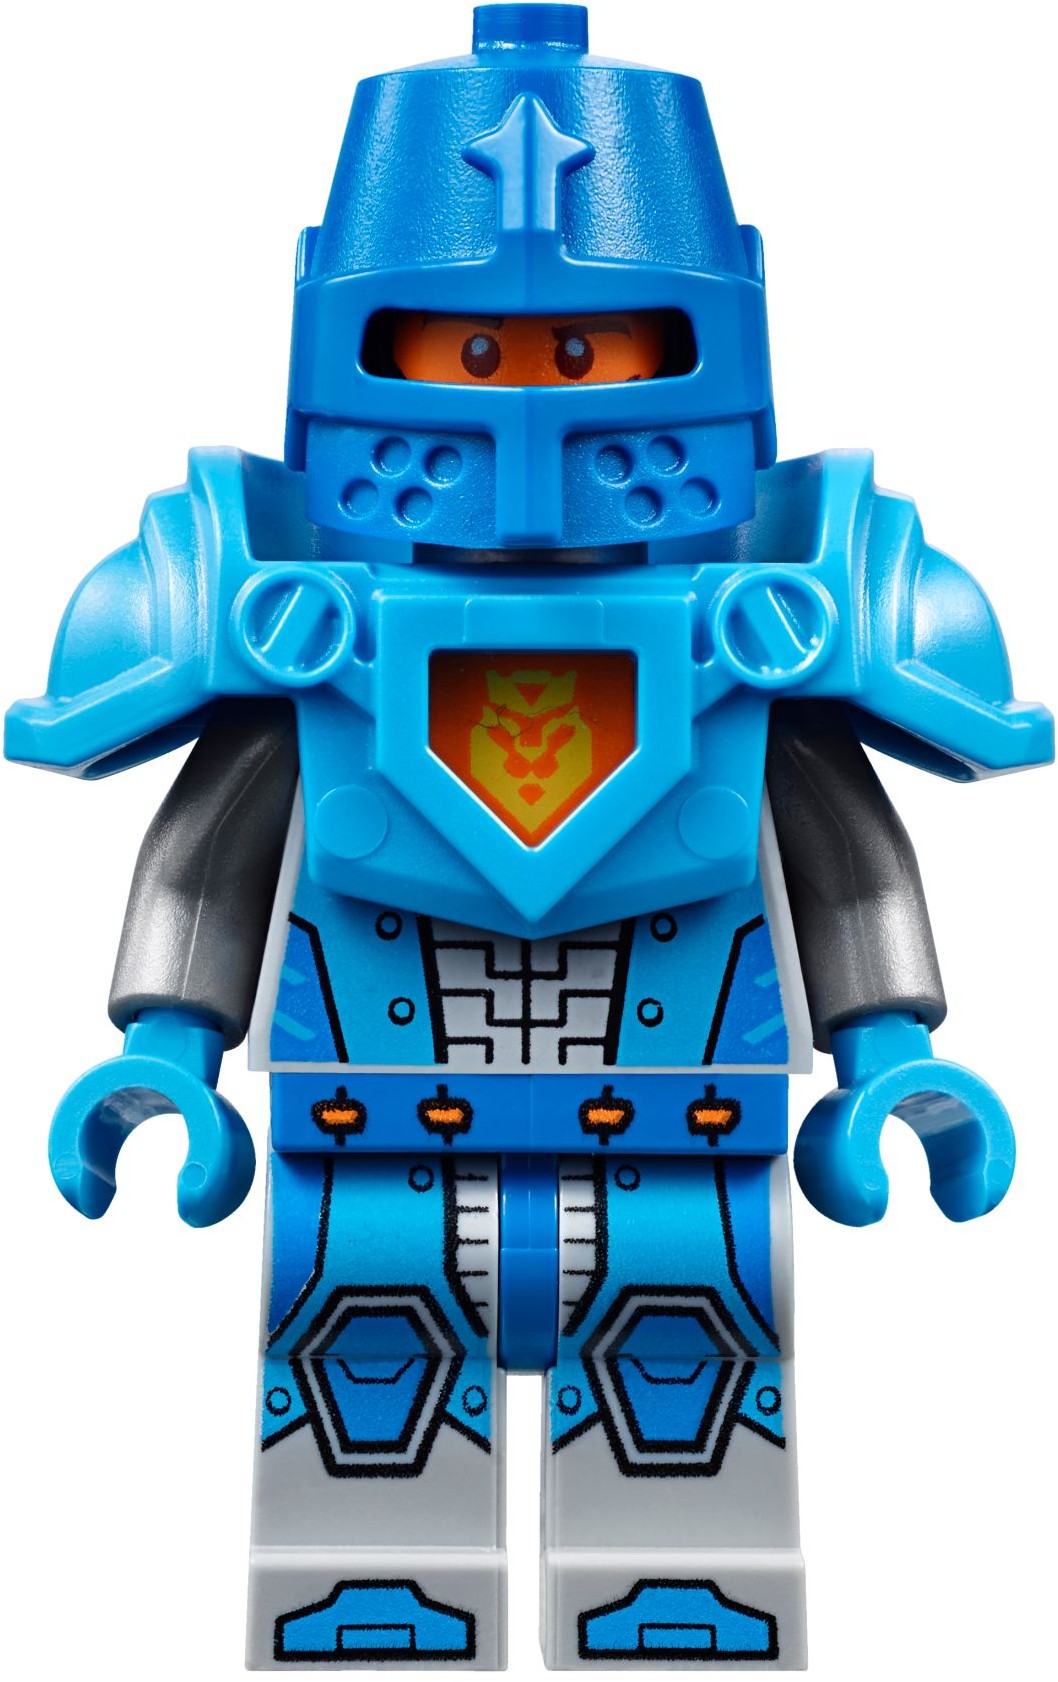 LEGO Nexo Knights 30376 Knighton Rider Polybag Sealed New